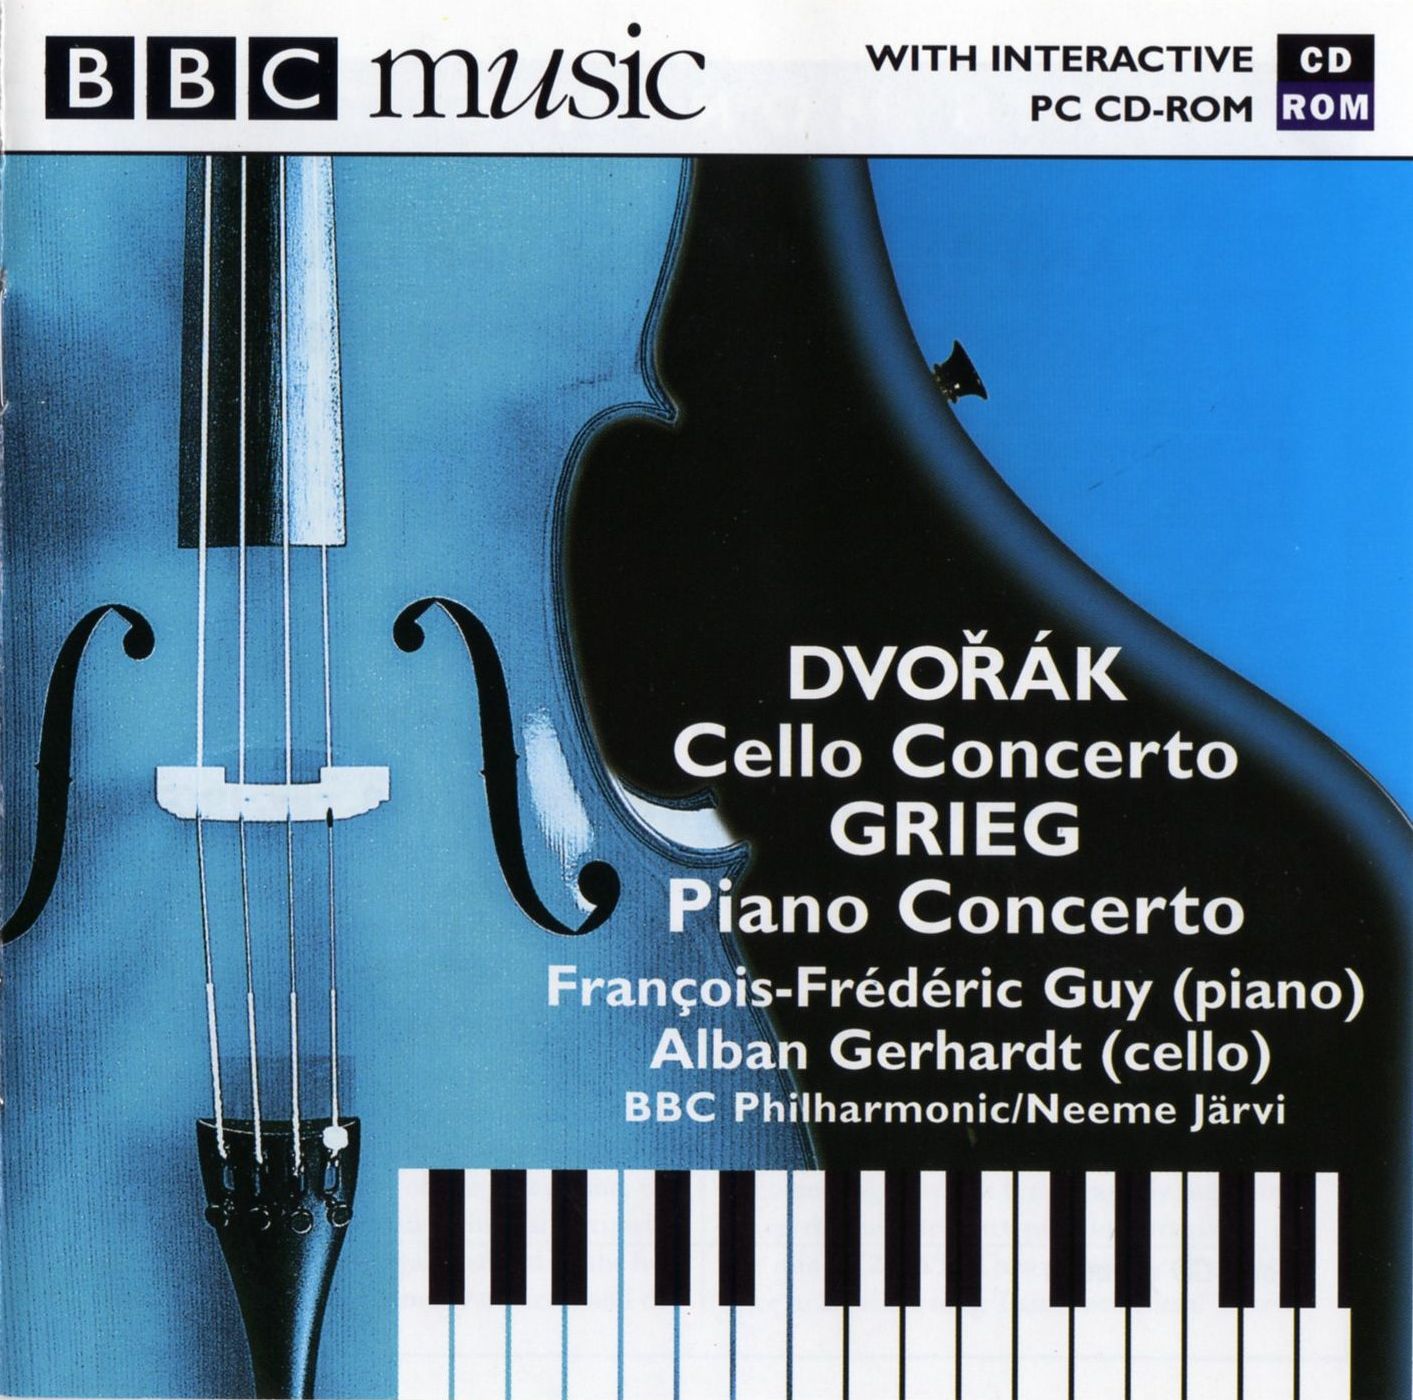 Dvorak and Grieg Concertos